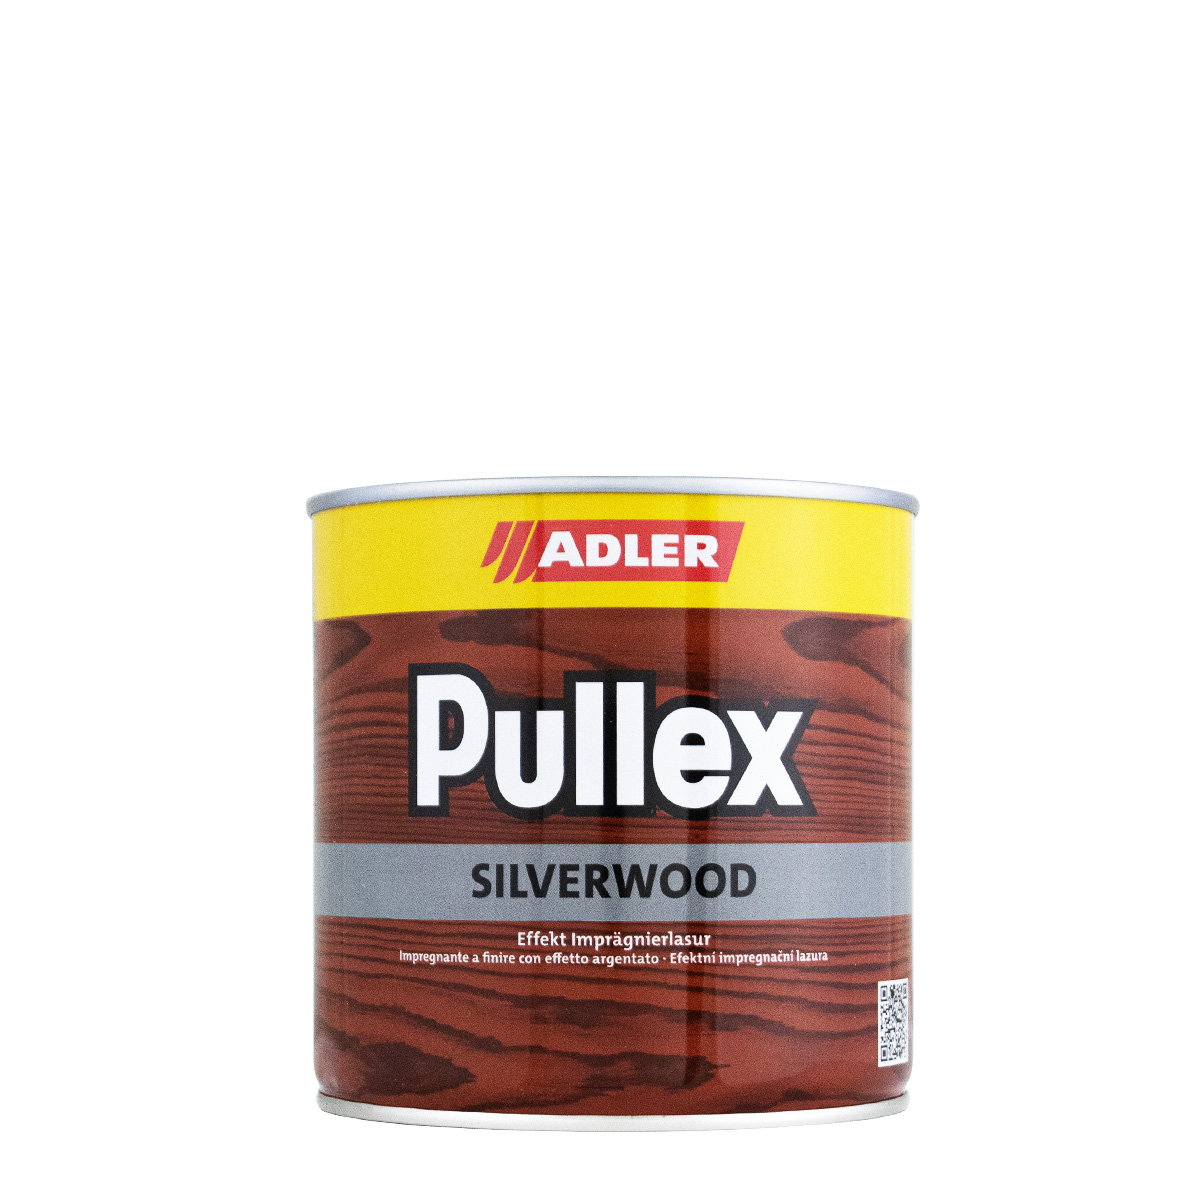 adler_pullex_silverwood_750ml_gross